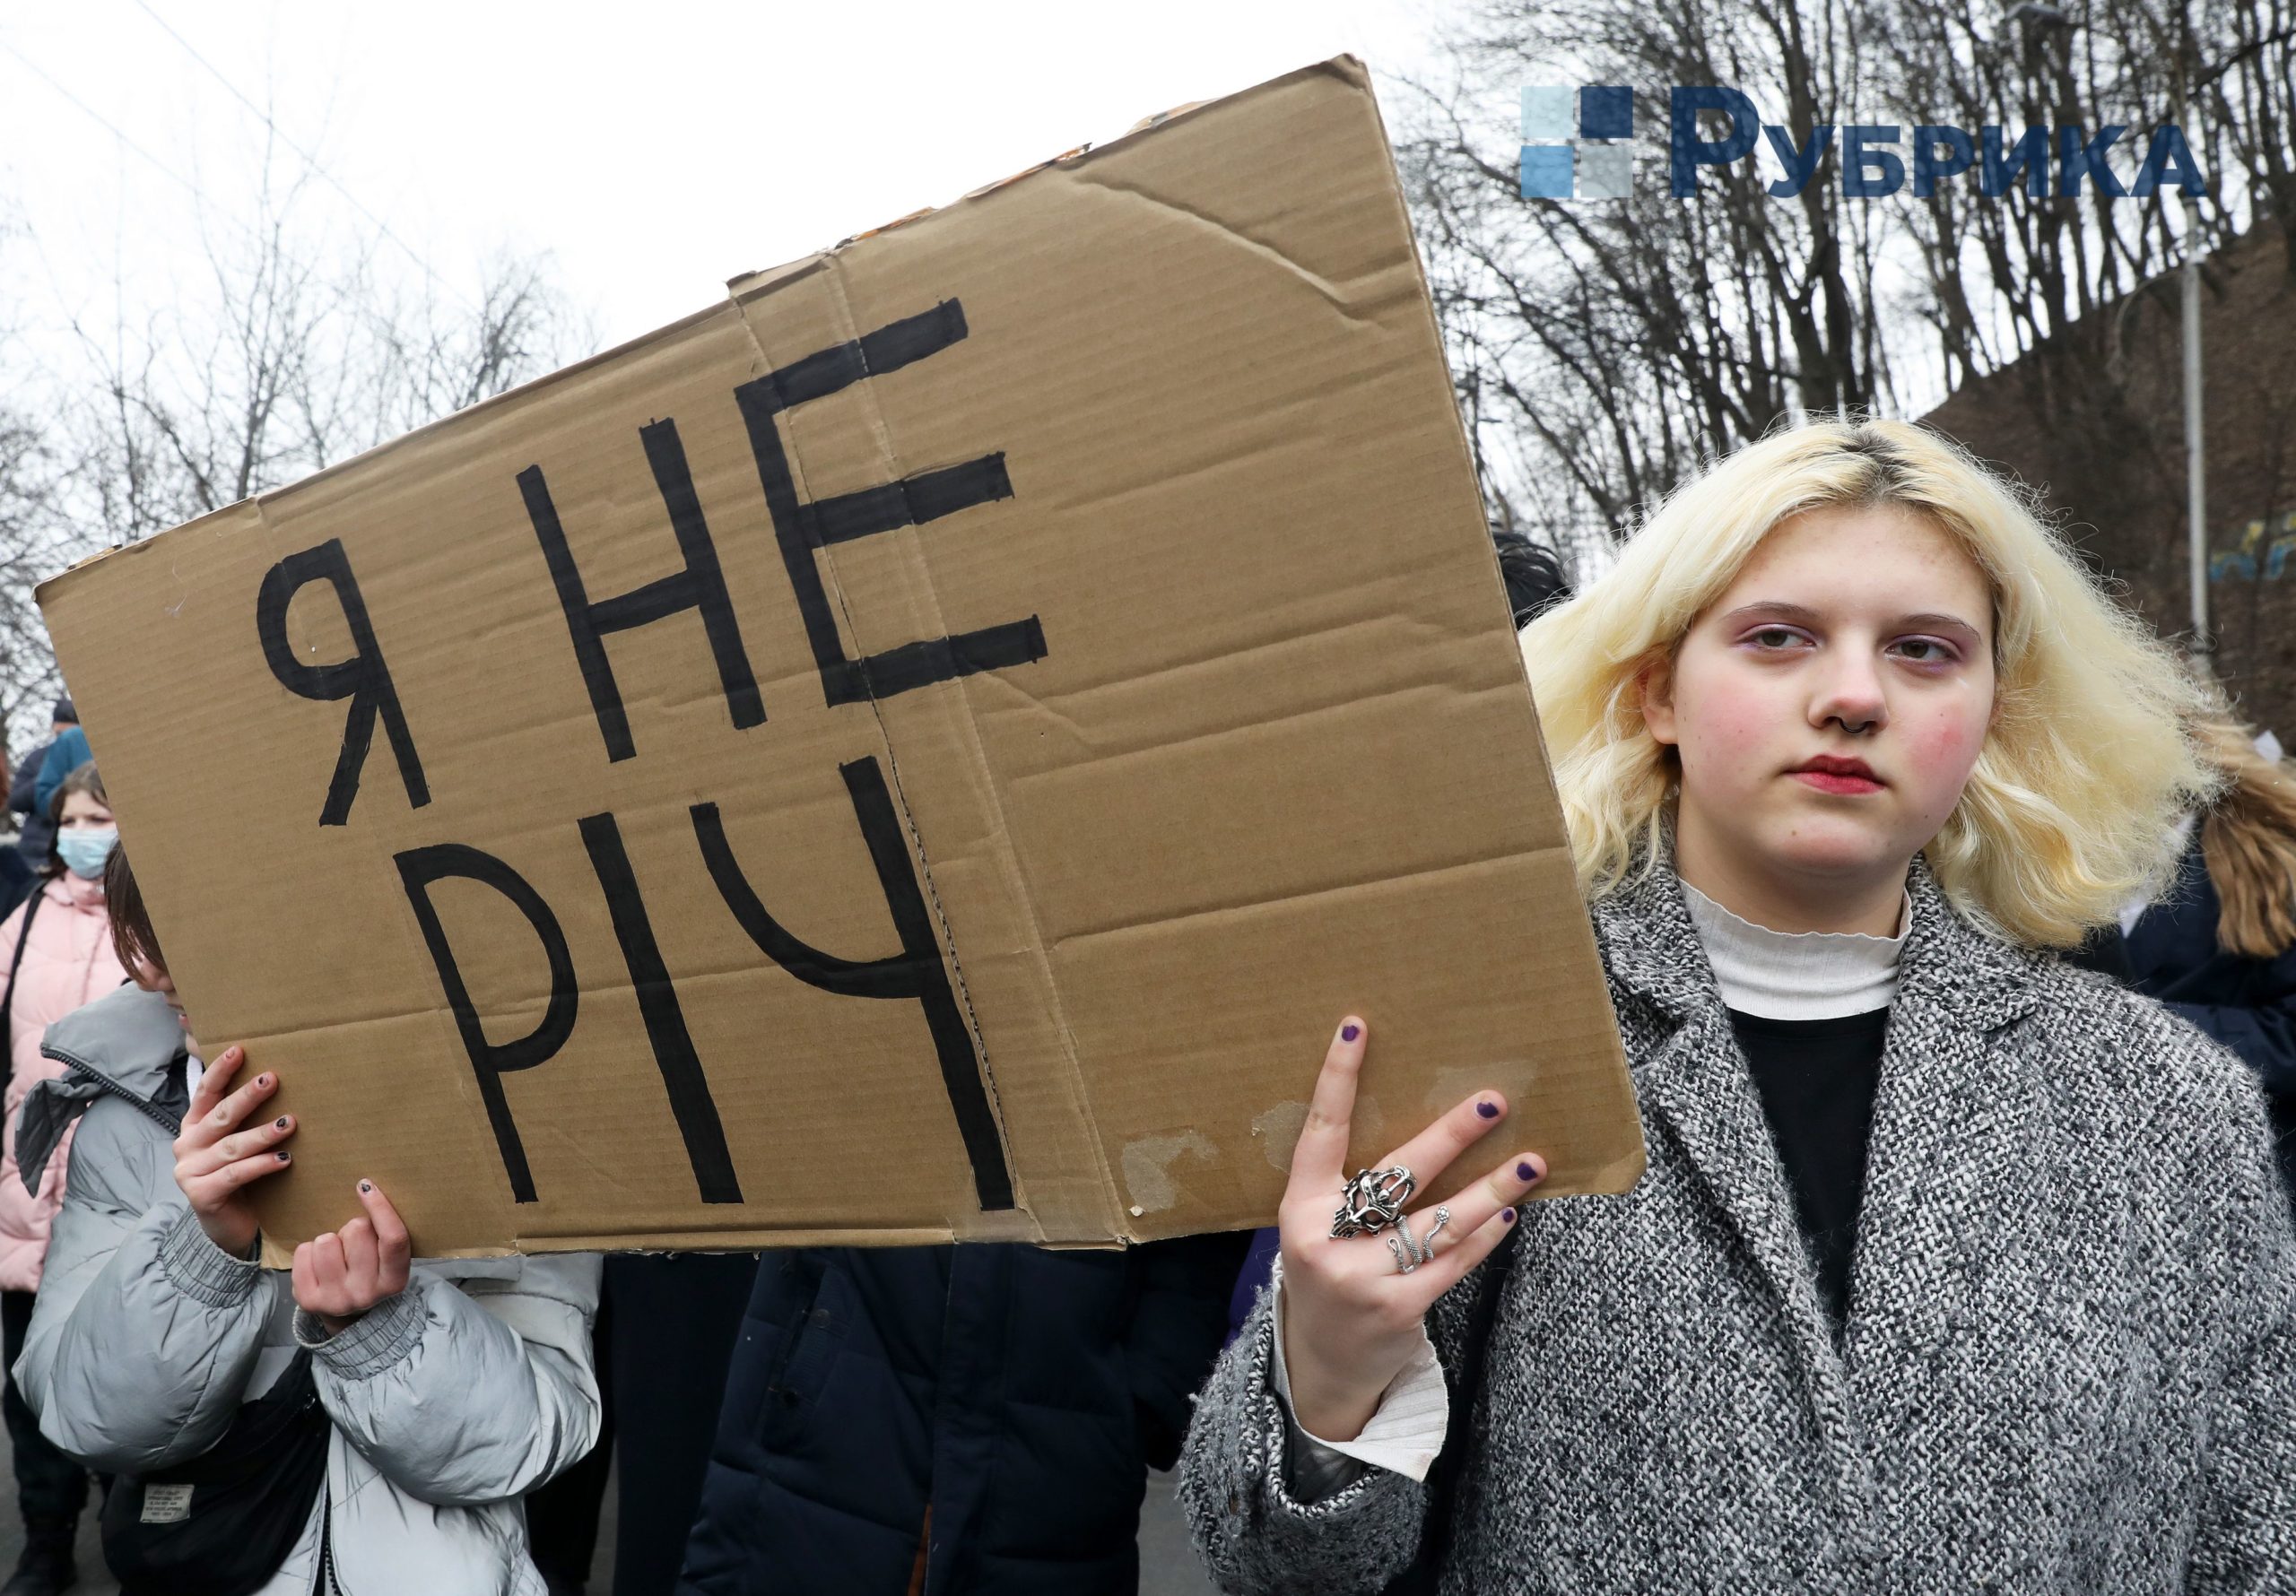 Марш жінок 2021 Київ